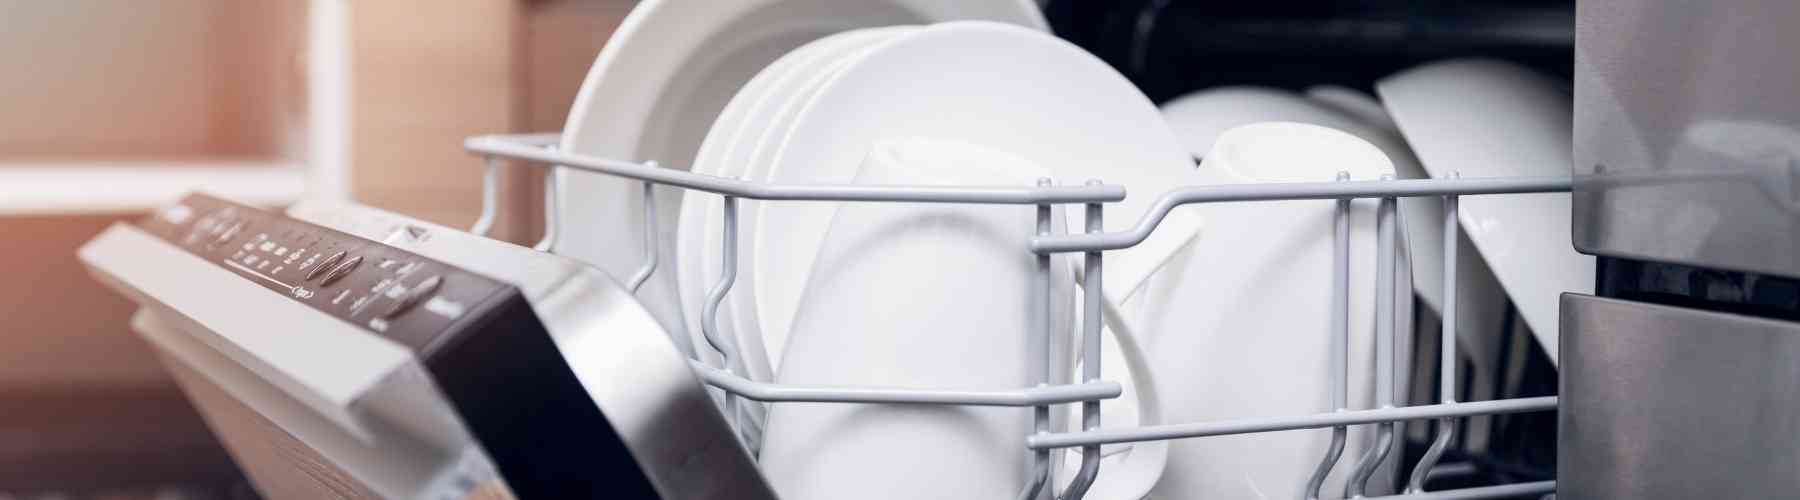 Use Dishwasher - Cut Expenses